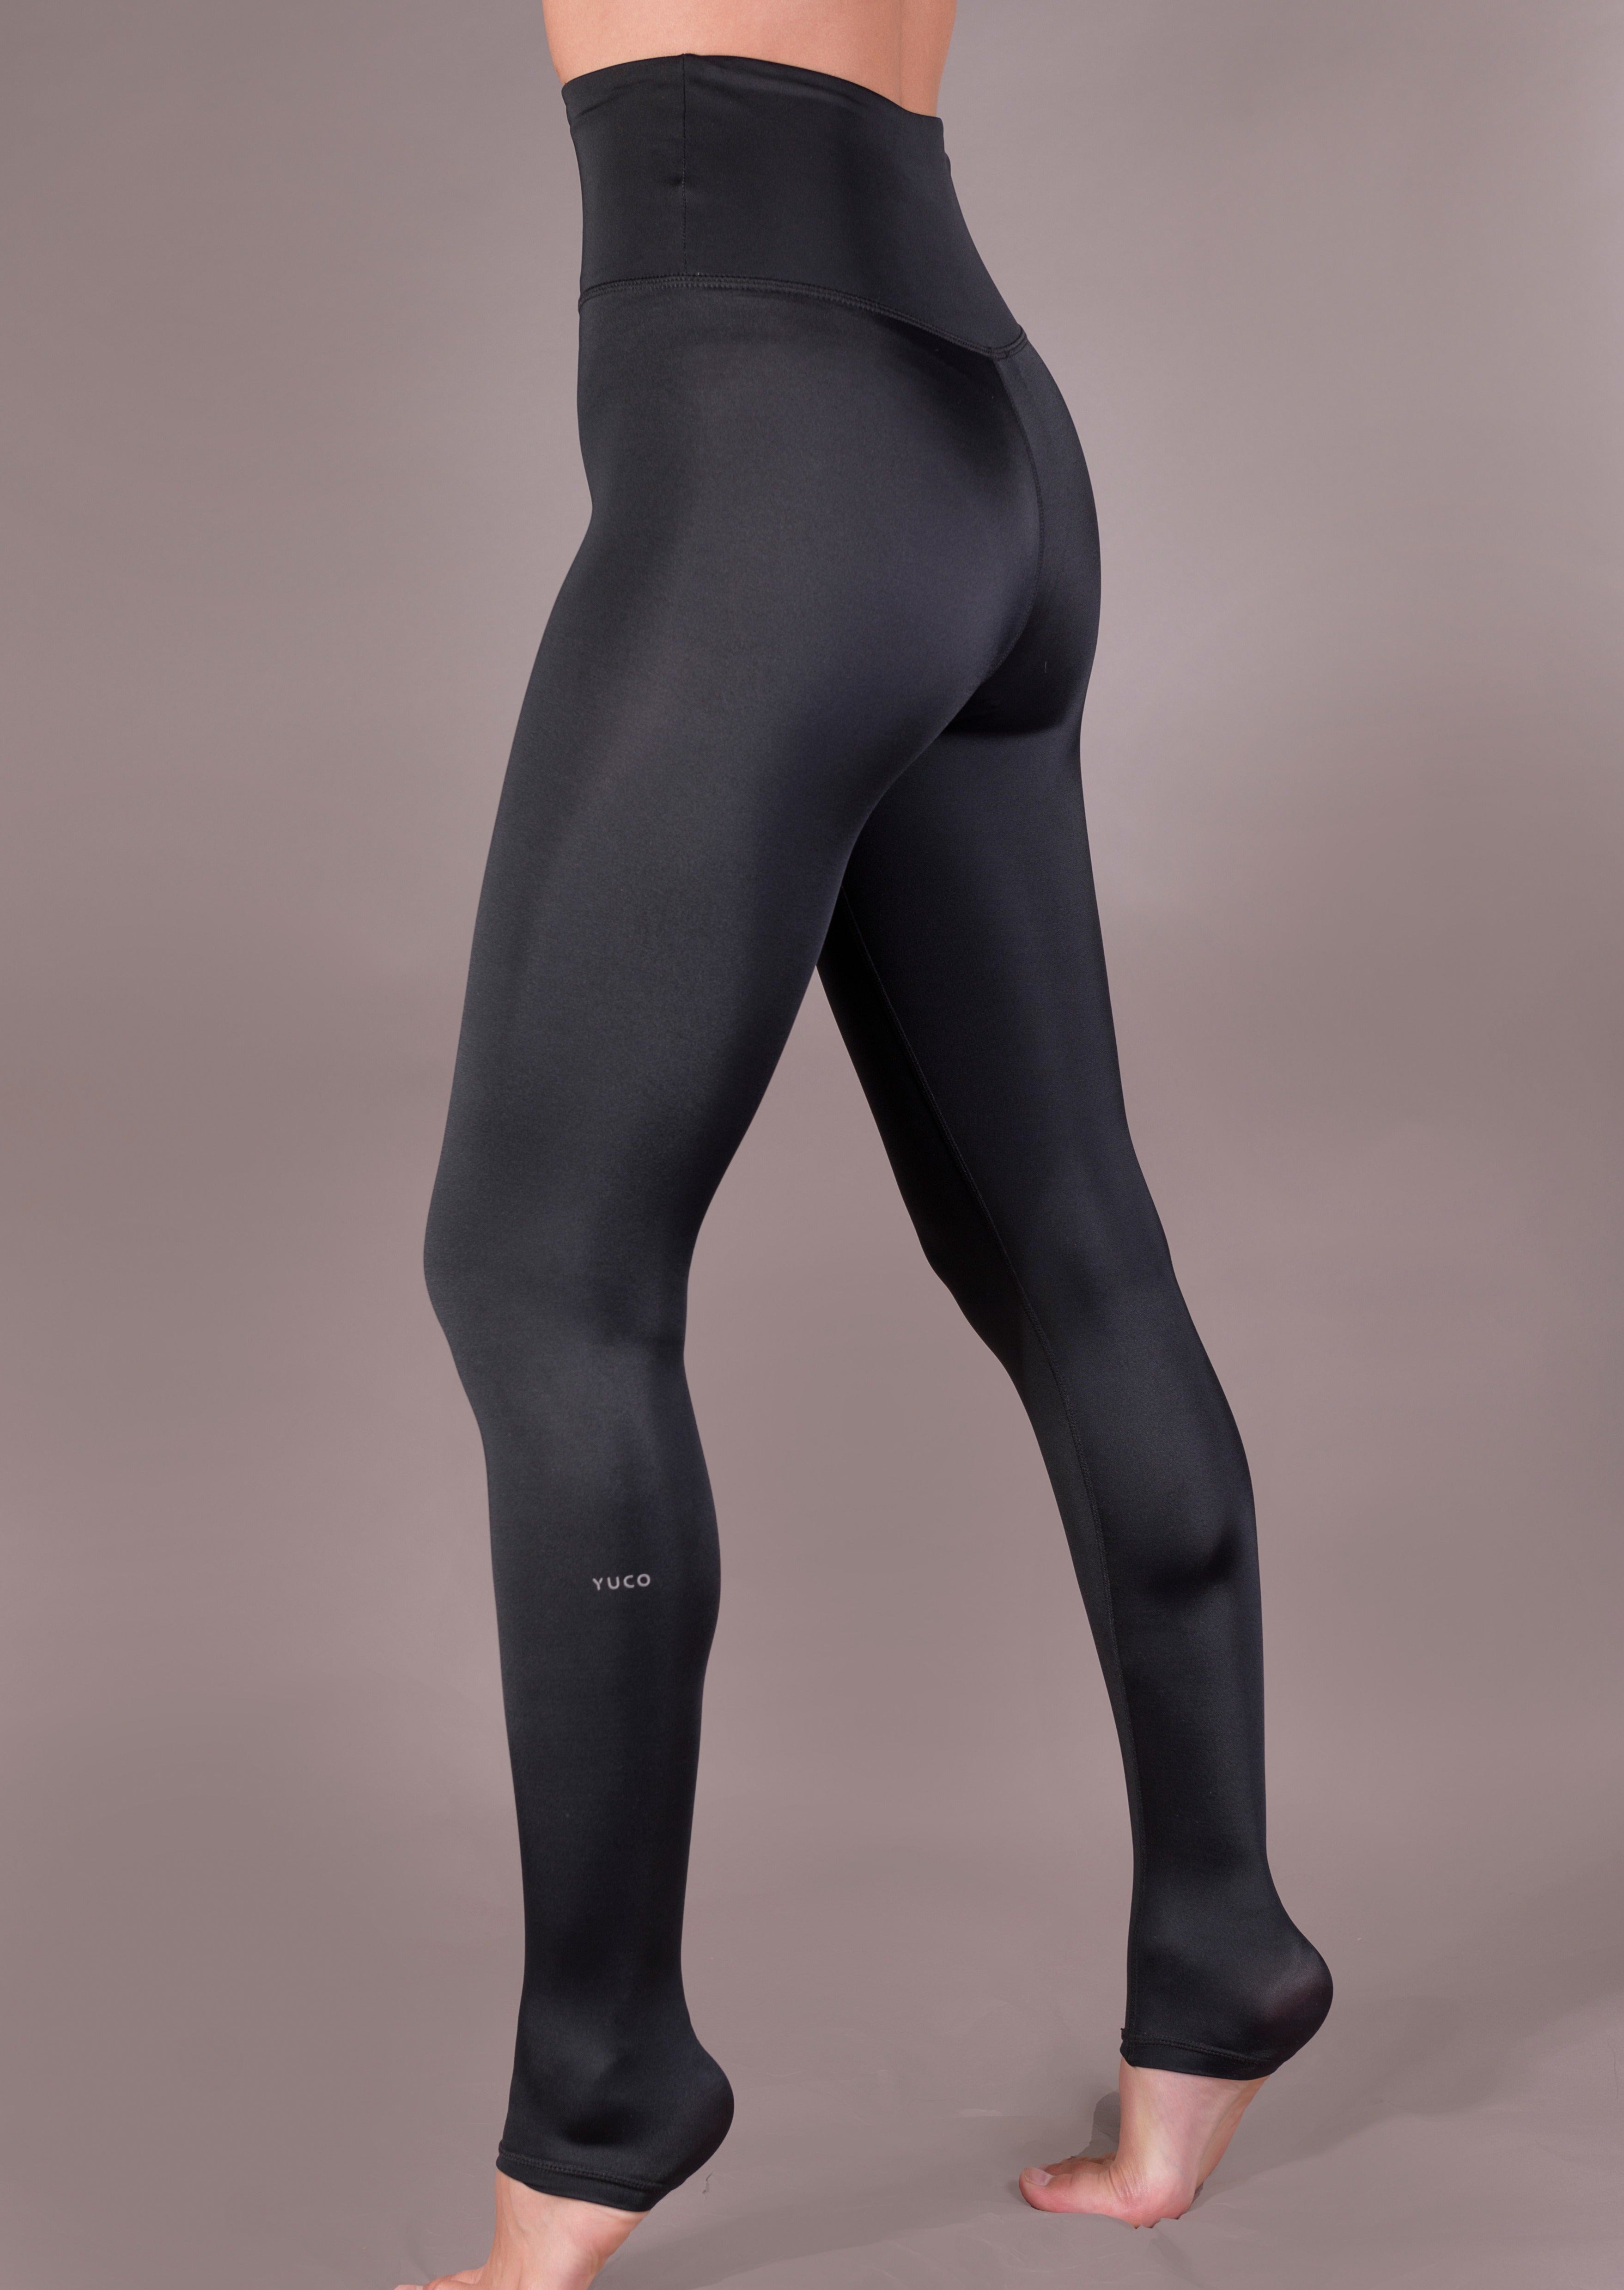 J. Jill Ankle Leggings Black XS  Black leggings, Ankle leggings, Leggings  shop